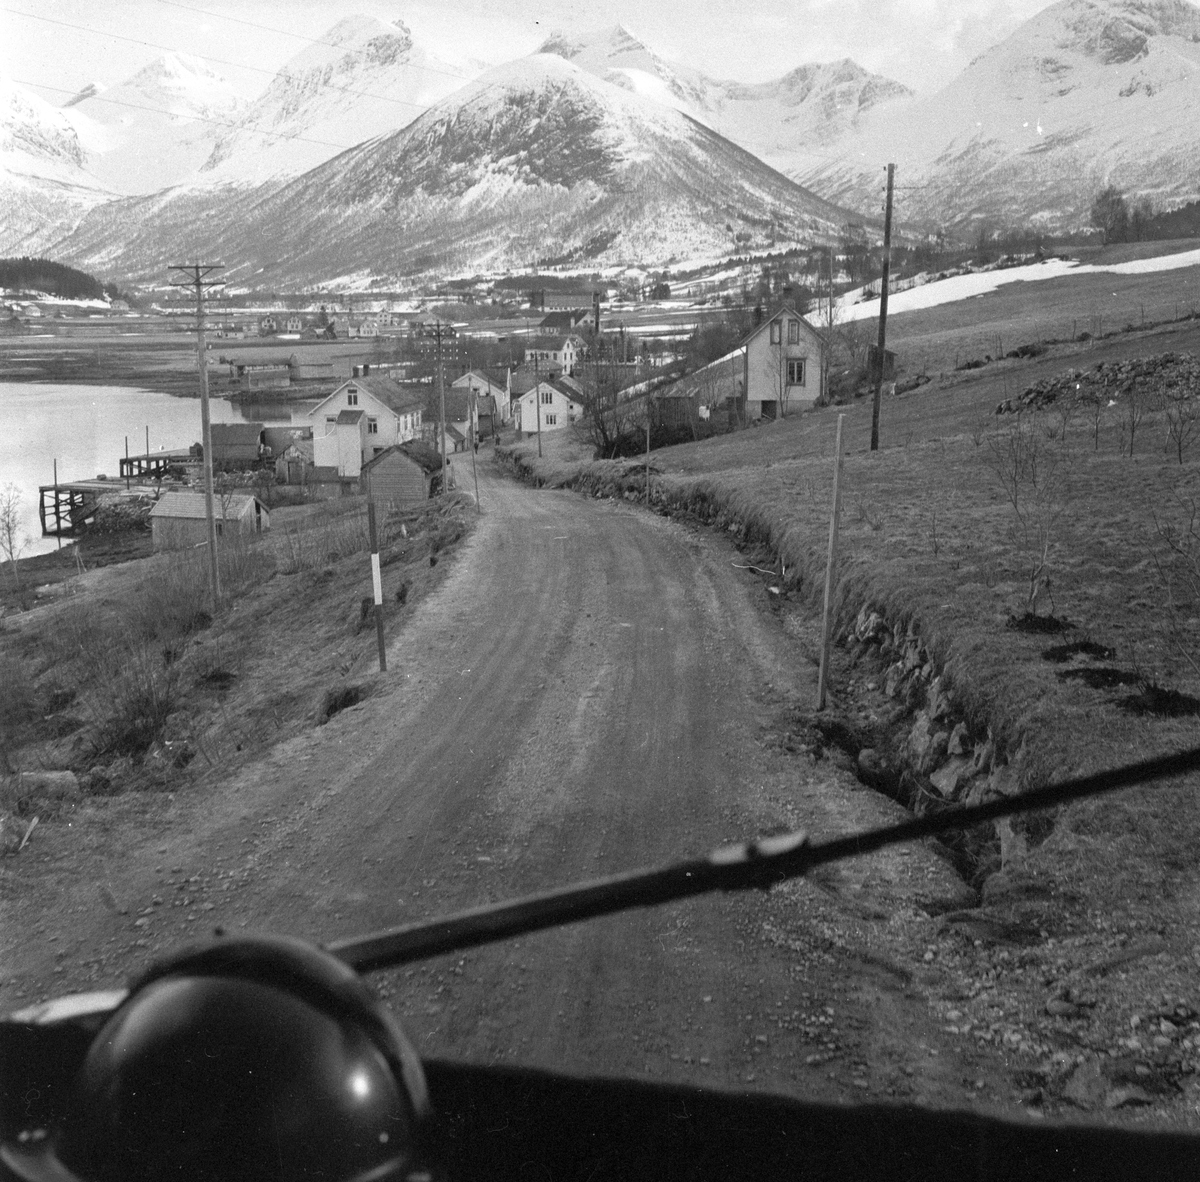 "NSB Bilruter" på veien mellom Ålesund og Åndalsnes. På vei inn mot tettsted. Fotografert 14. april 1956.